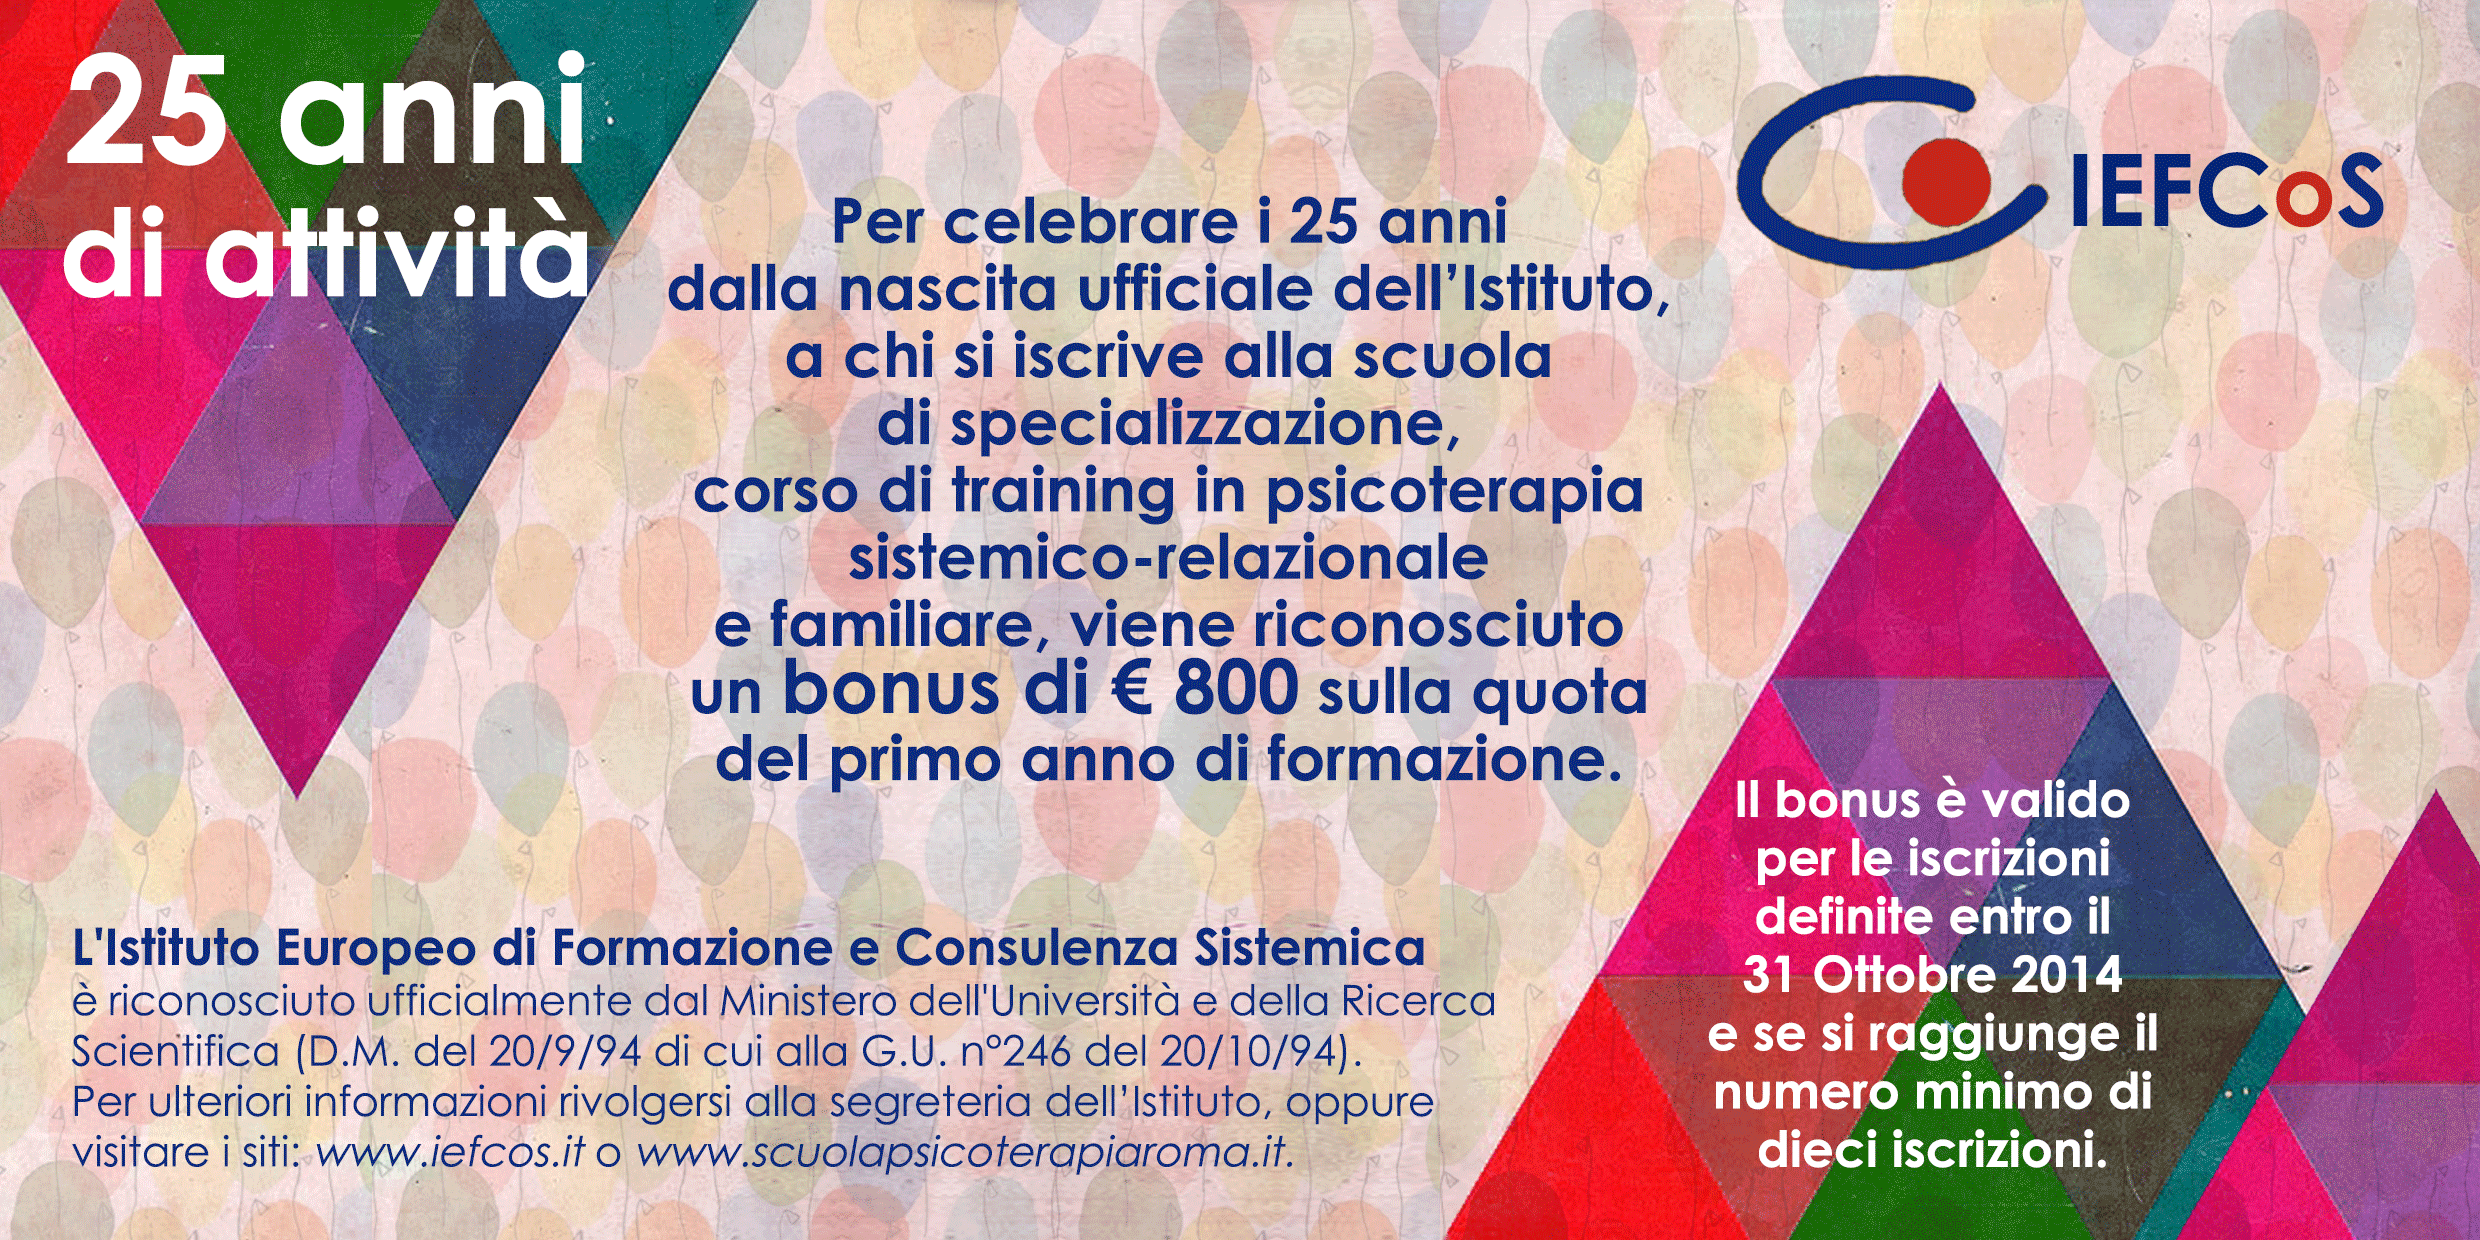 promozione per i 25 anni della Scuola di Specializzazione in Psicoterapia IEFCoS Roma